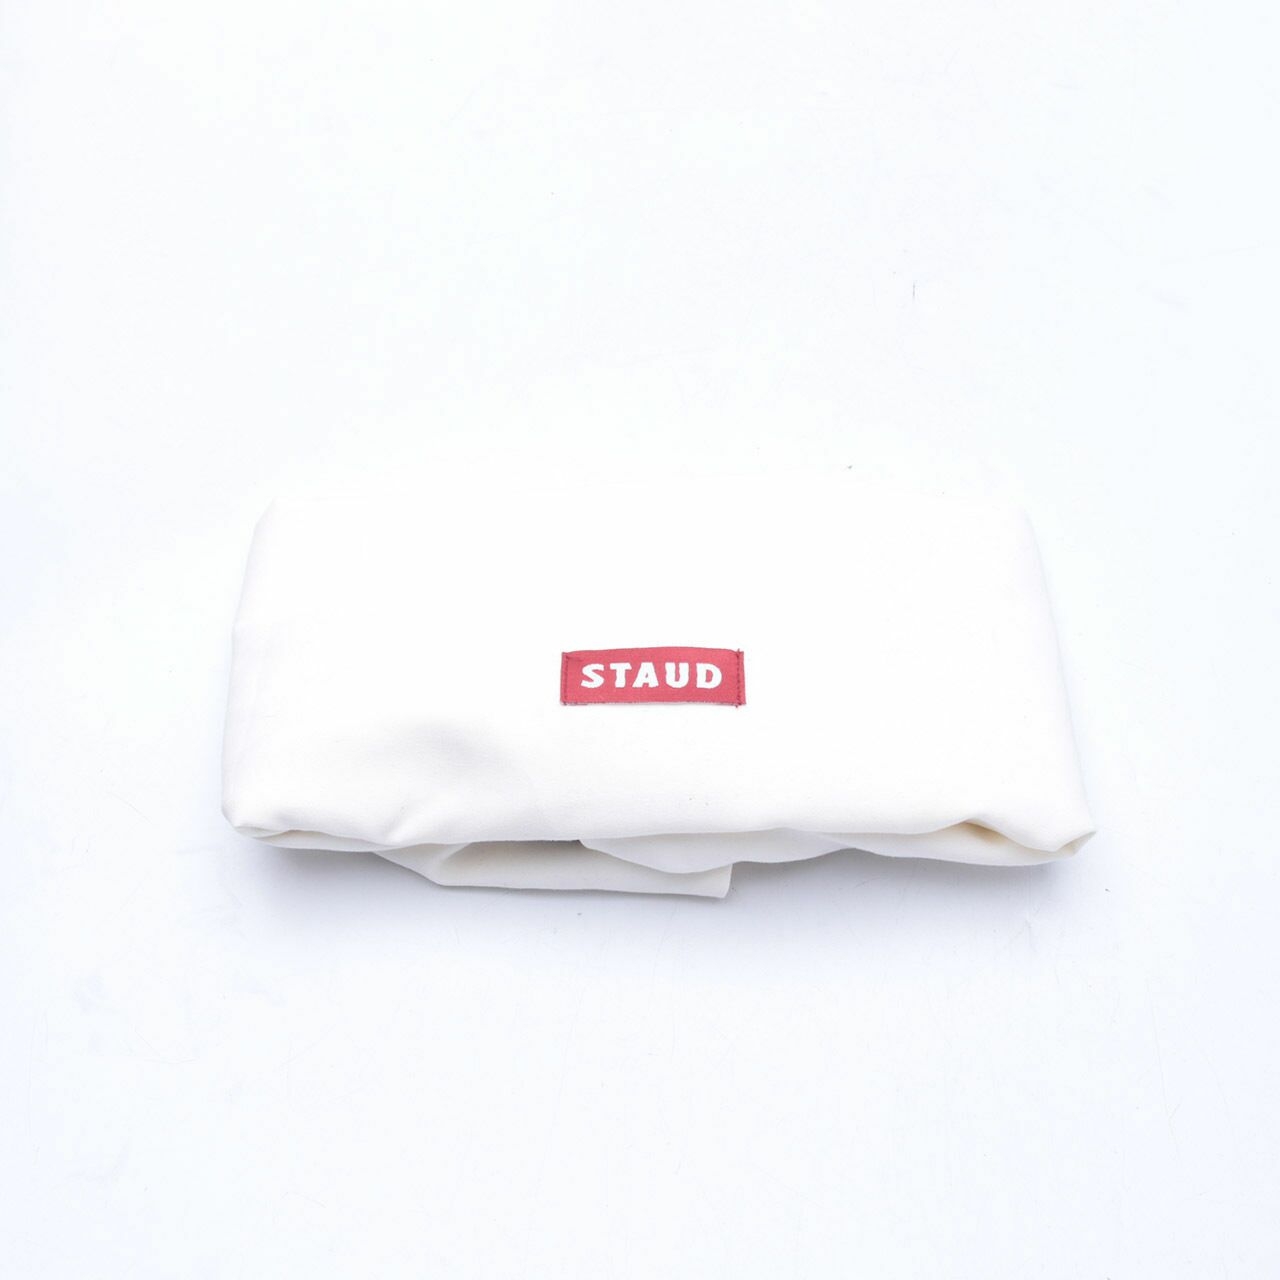 Staud Brown & White Handbag